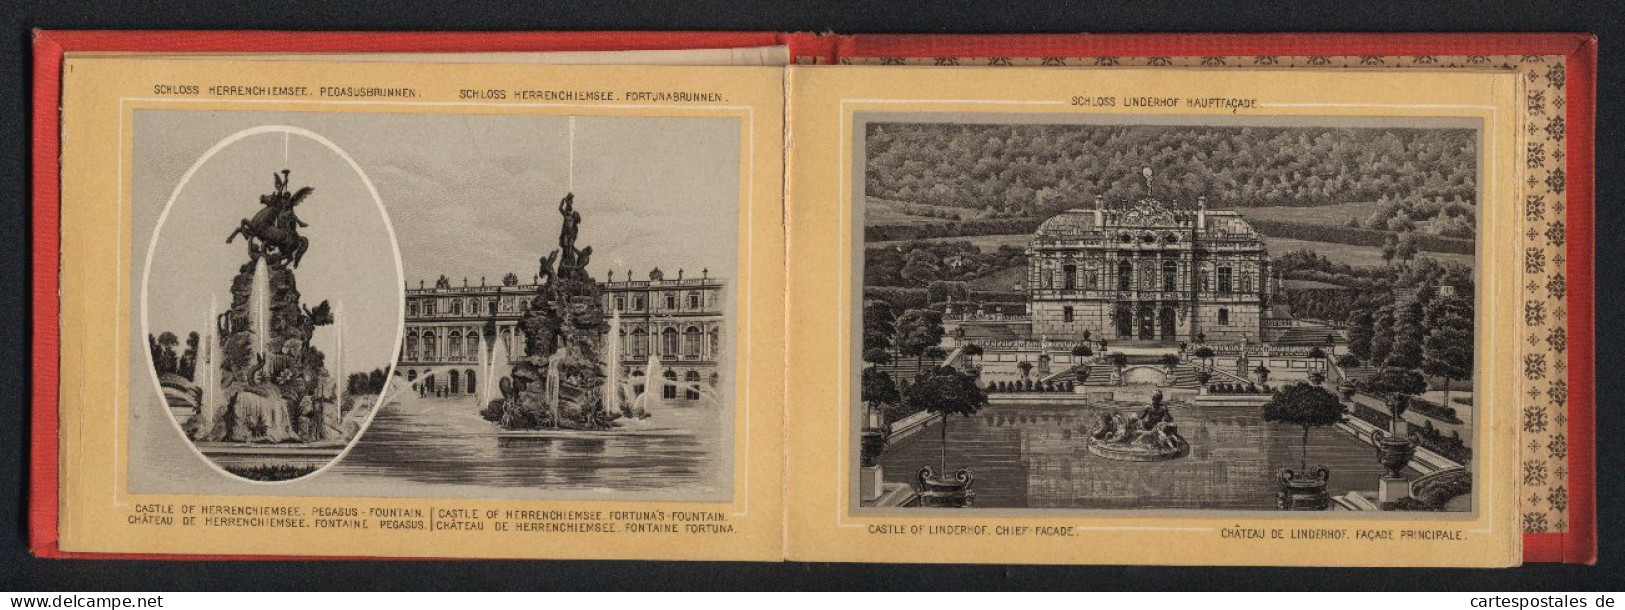 Leporello-Album Lieblingsschlösser König Ludwig II. Mit 17 Lithographie-Ansichten, Linderhof, Kiosk, Neuschwanstein,  - Litografía